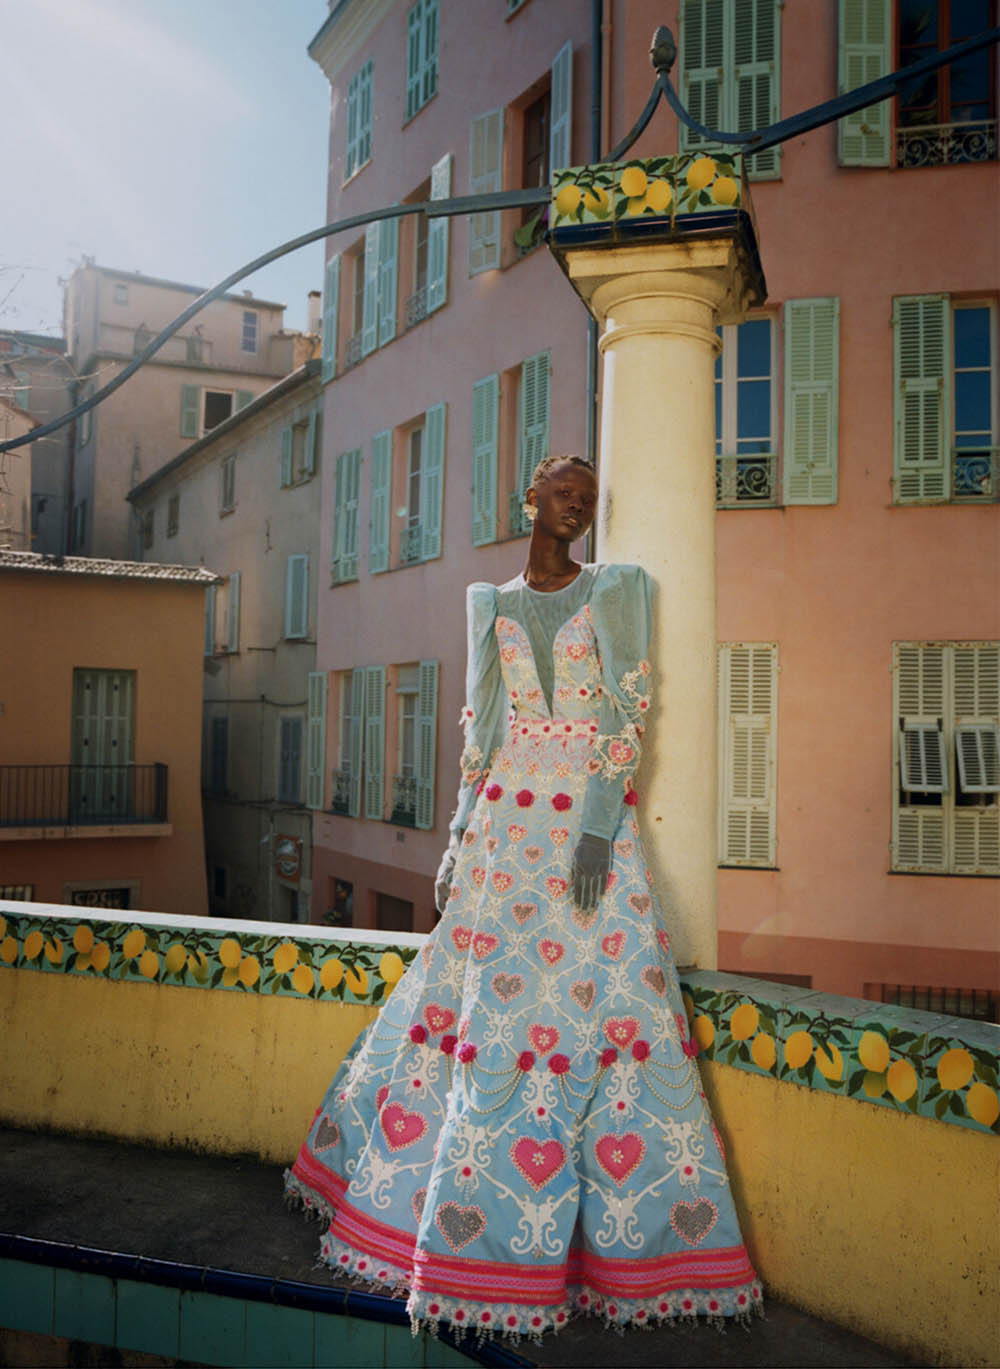 Shanelle Nyasiase covers Vogue Ukraine July 2019 by Nadine Ijewere